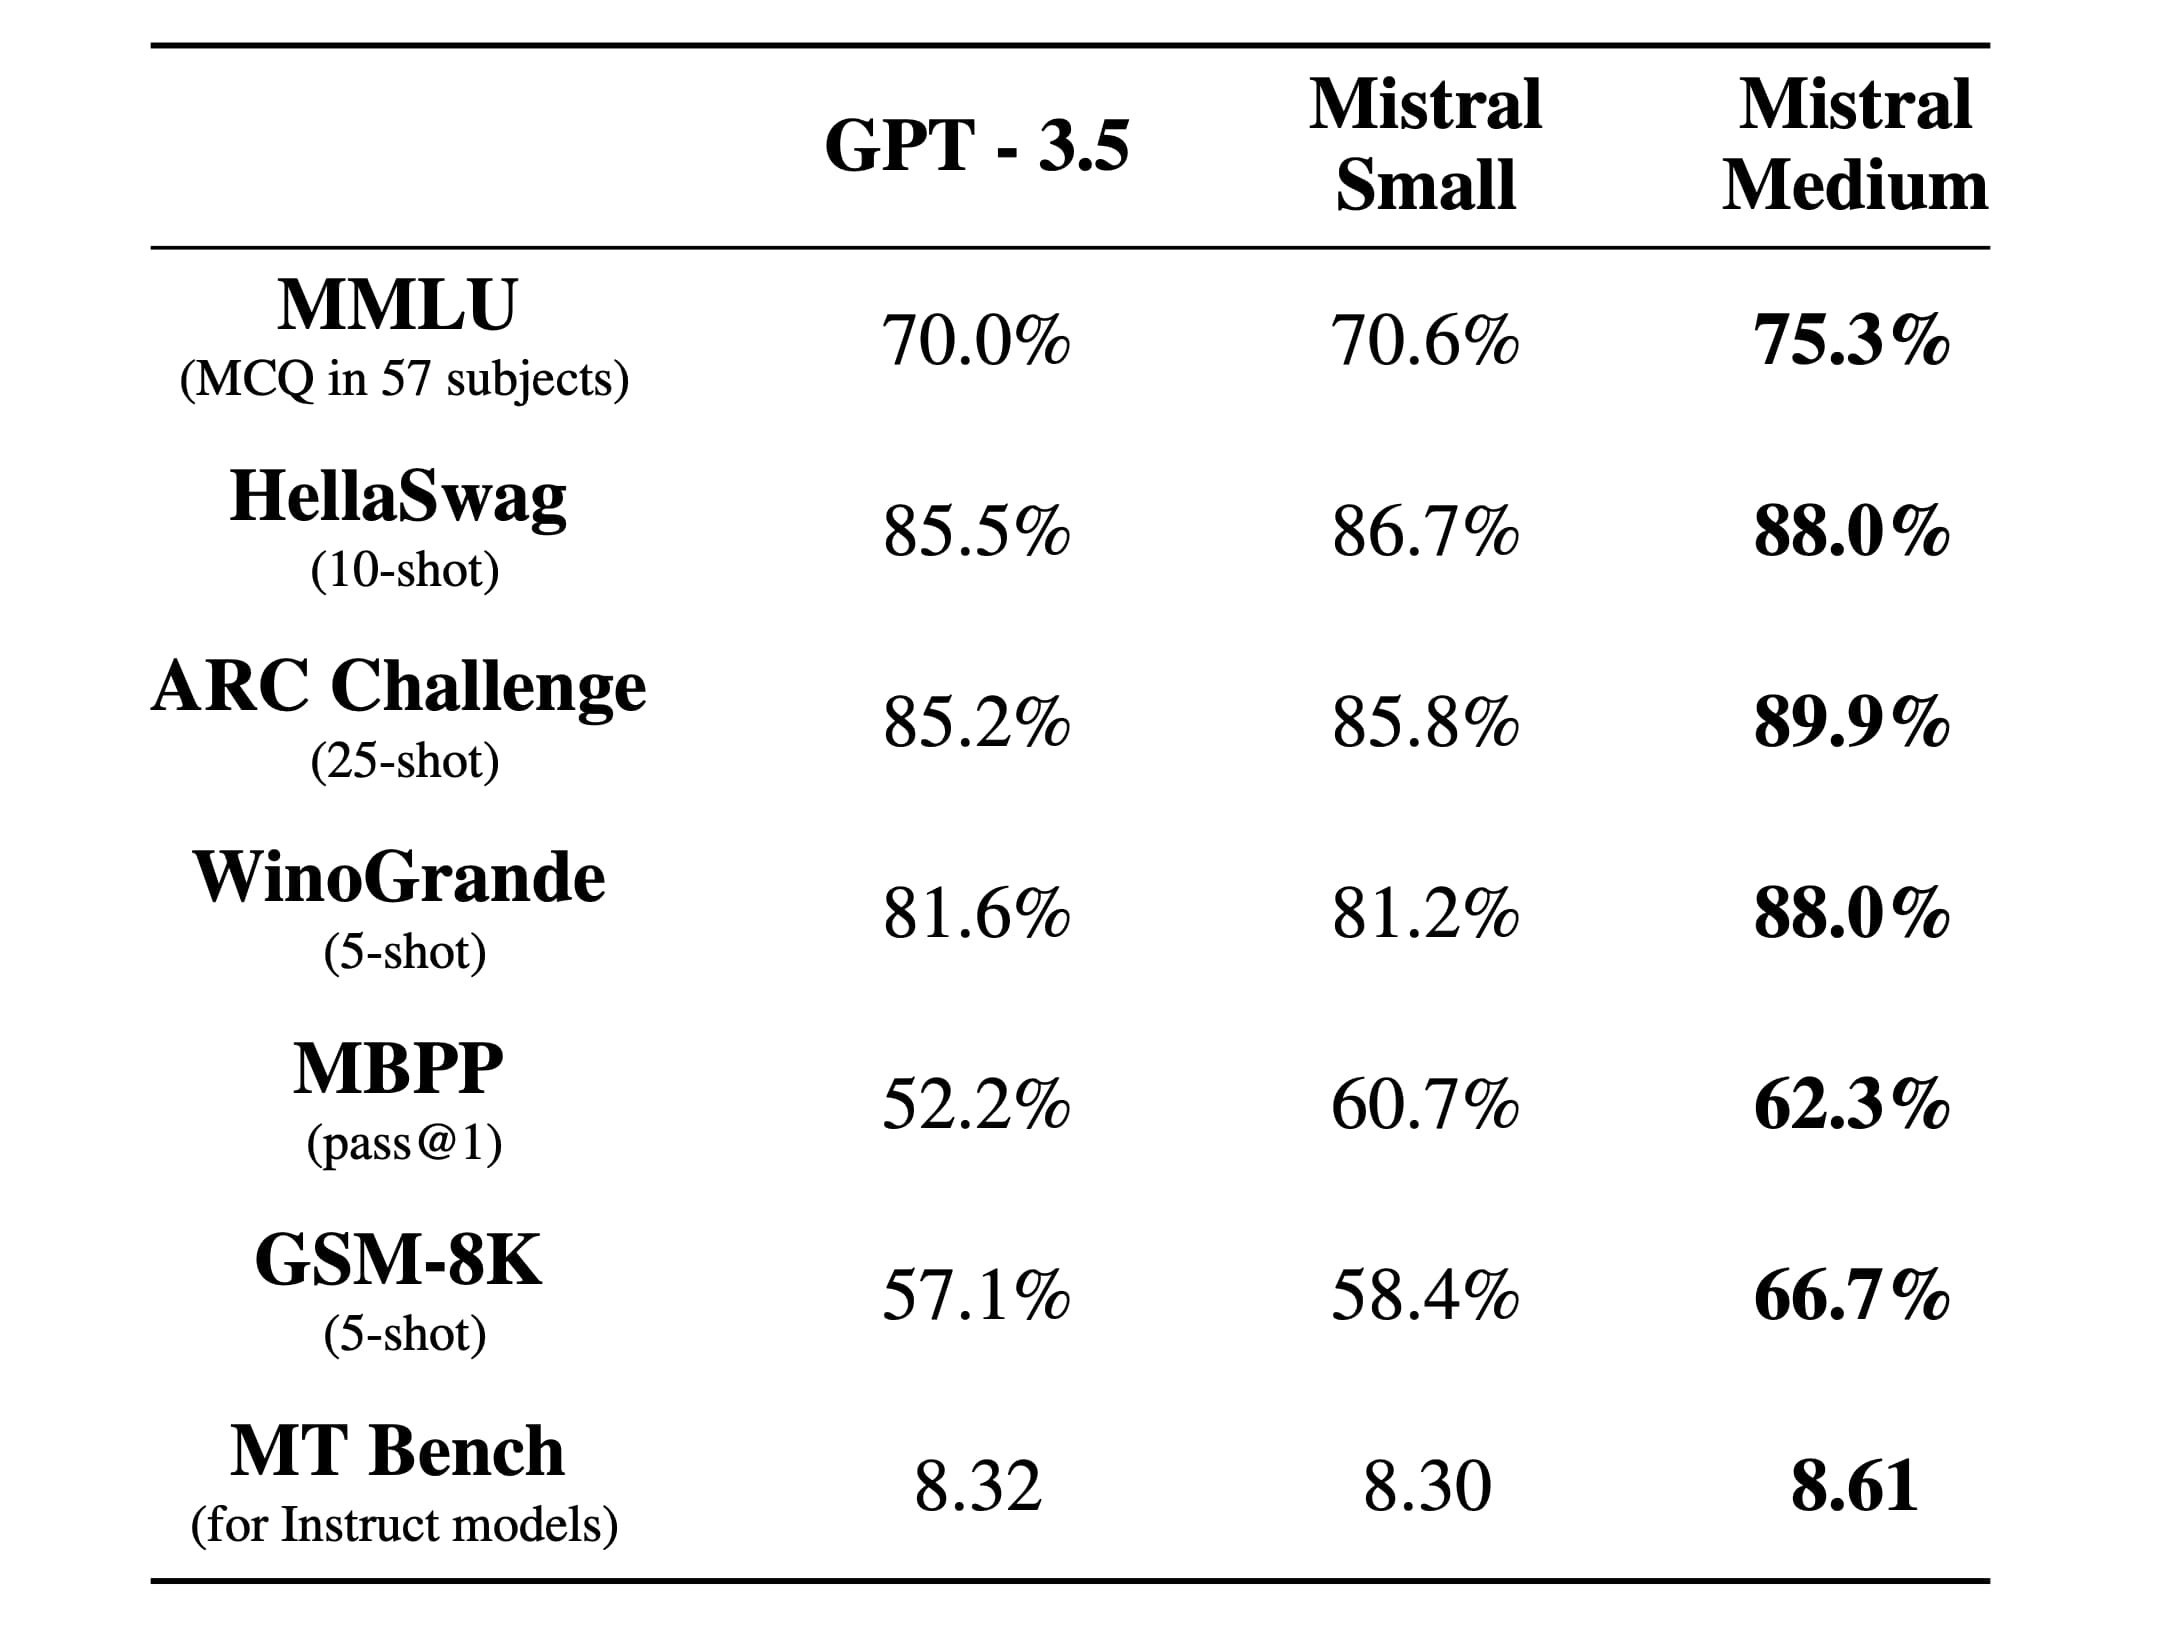 在多项选择题测试 MMLU（覆盖 57 个学科）中，GPT-3.5 的表现为 70%，而 Mistral Small 和 Mistral Medium 的表现分别为 70.6% 和 75.3%。在 HellaSwag（10-shot）测试中，GPT-3.5 的成绩为 85.5%，Mistral Small 和 Mistral Medium 分别达到了 86.7% 和 88%。在 ARC Challenge（25-shot）中，GPT-3.5、Mistral Small 和 Mistral Medium 的分数分别是 85.2%、85.8% 和 89.9%。在 WinoGrande（5-shot）测试中，GPT-3.5 的得分为 81.6%，Mistral Small 和 Mistral Medium 分别为 81.2% 和 88%。在 MBPP（pass@1）测试中，GPT-3.5、Mistral Small 和 Mistral Medium 的成绩分别是 52.2%、60.7% 和 62.3%。在 GSM-8K（5-shot）测试中，GPT-3.5、Mistral Small 和 Mistral Medium 的得分分别为 57.1%、58.4% 和 66.7%。在 MT Bench（针对 Instruct 模型）的评测中，GPT-3.5、Mistral Small 和 Mistral Medium 的得分分别是 8.32、8.30 和 8.61。